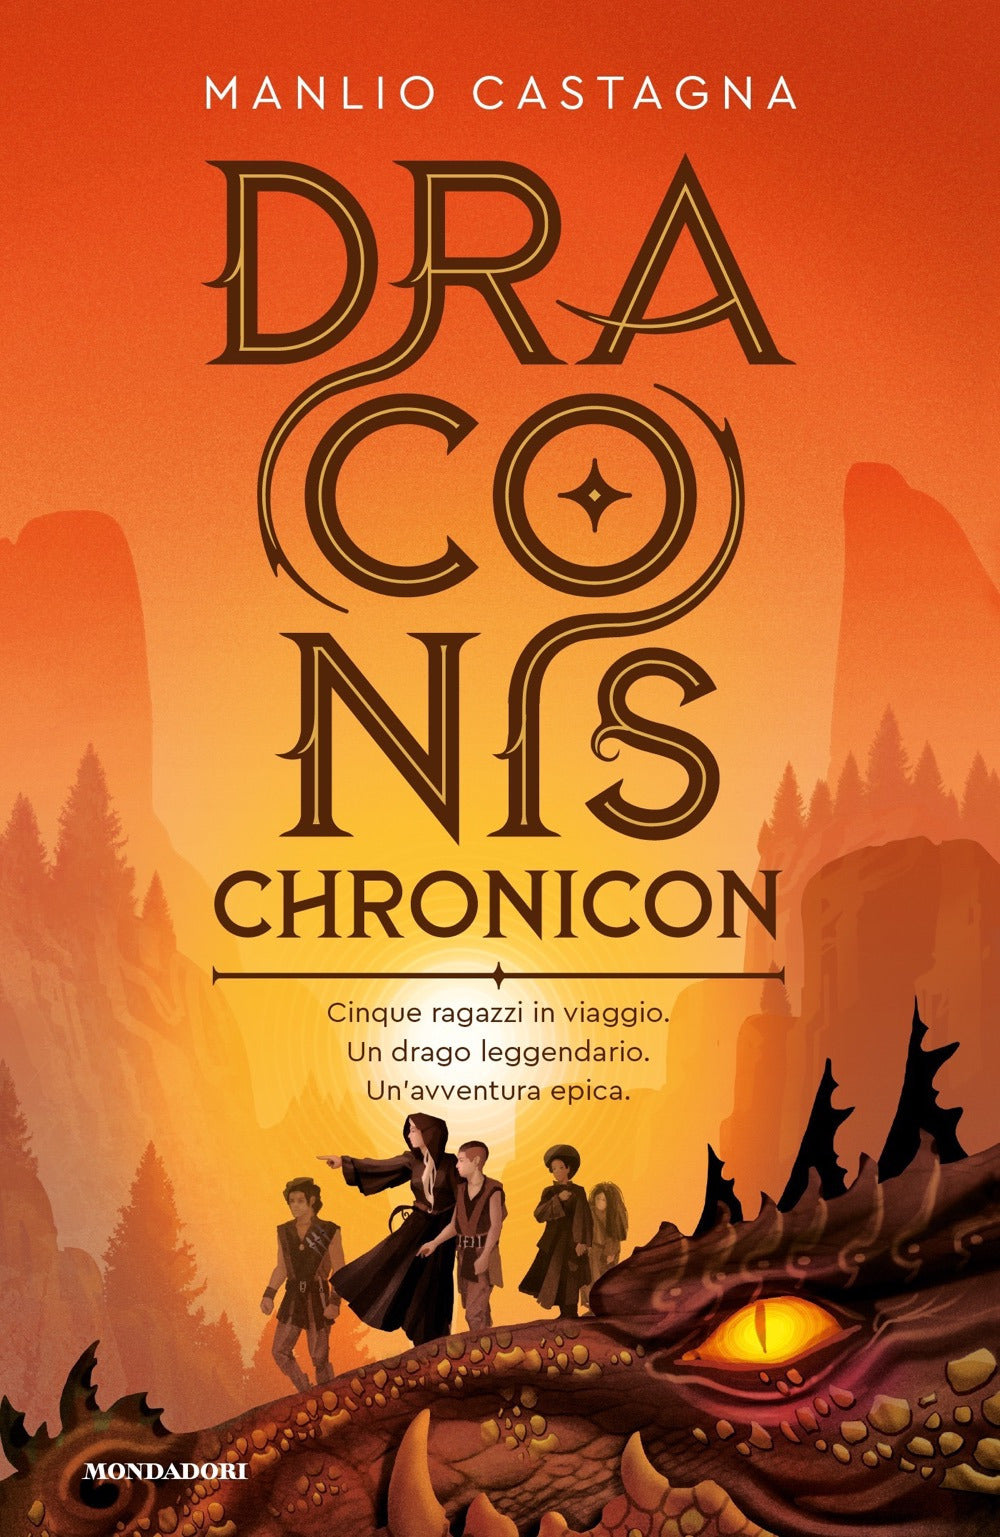 Draconis chronicon.